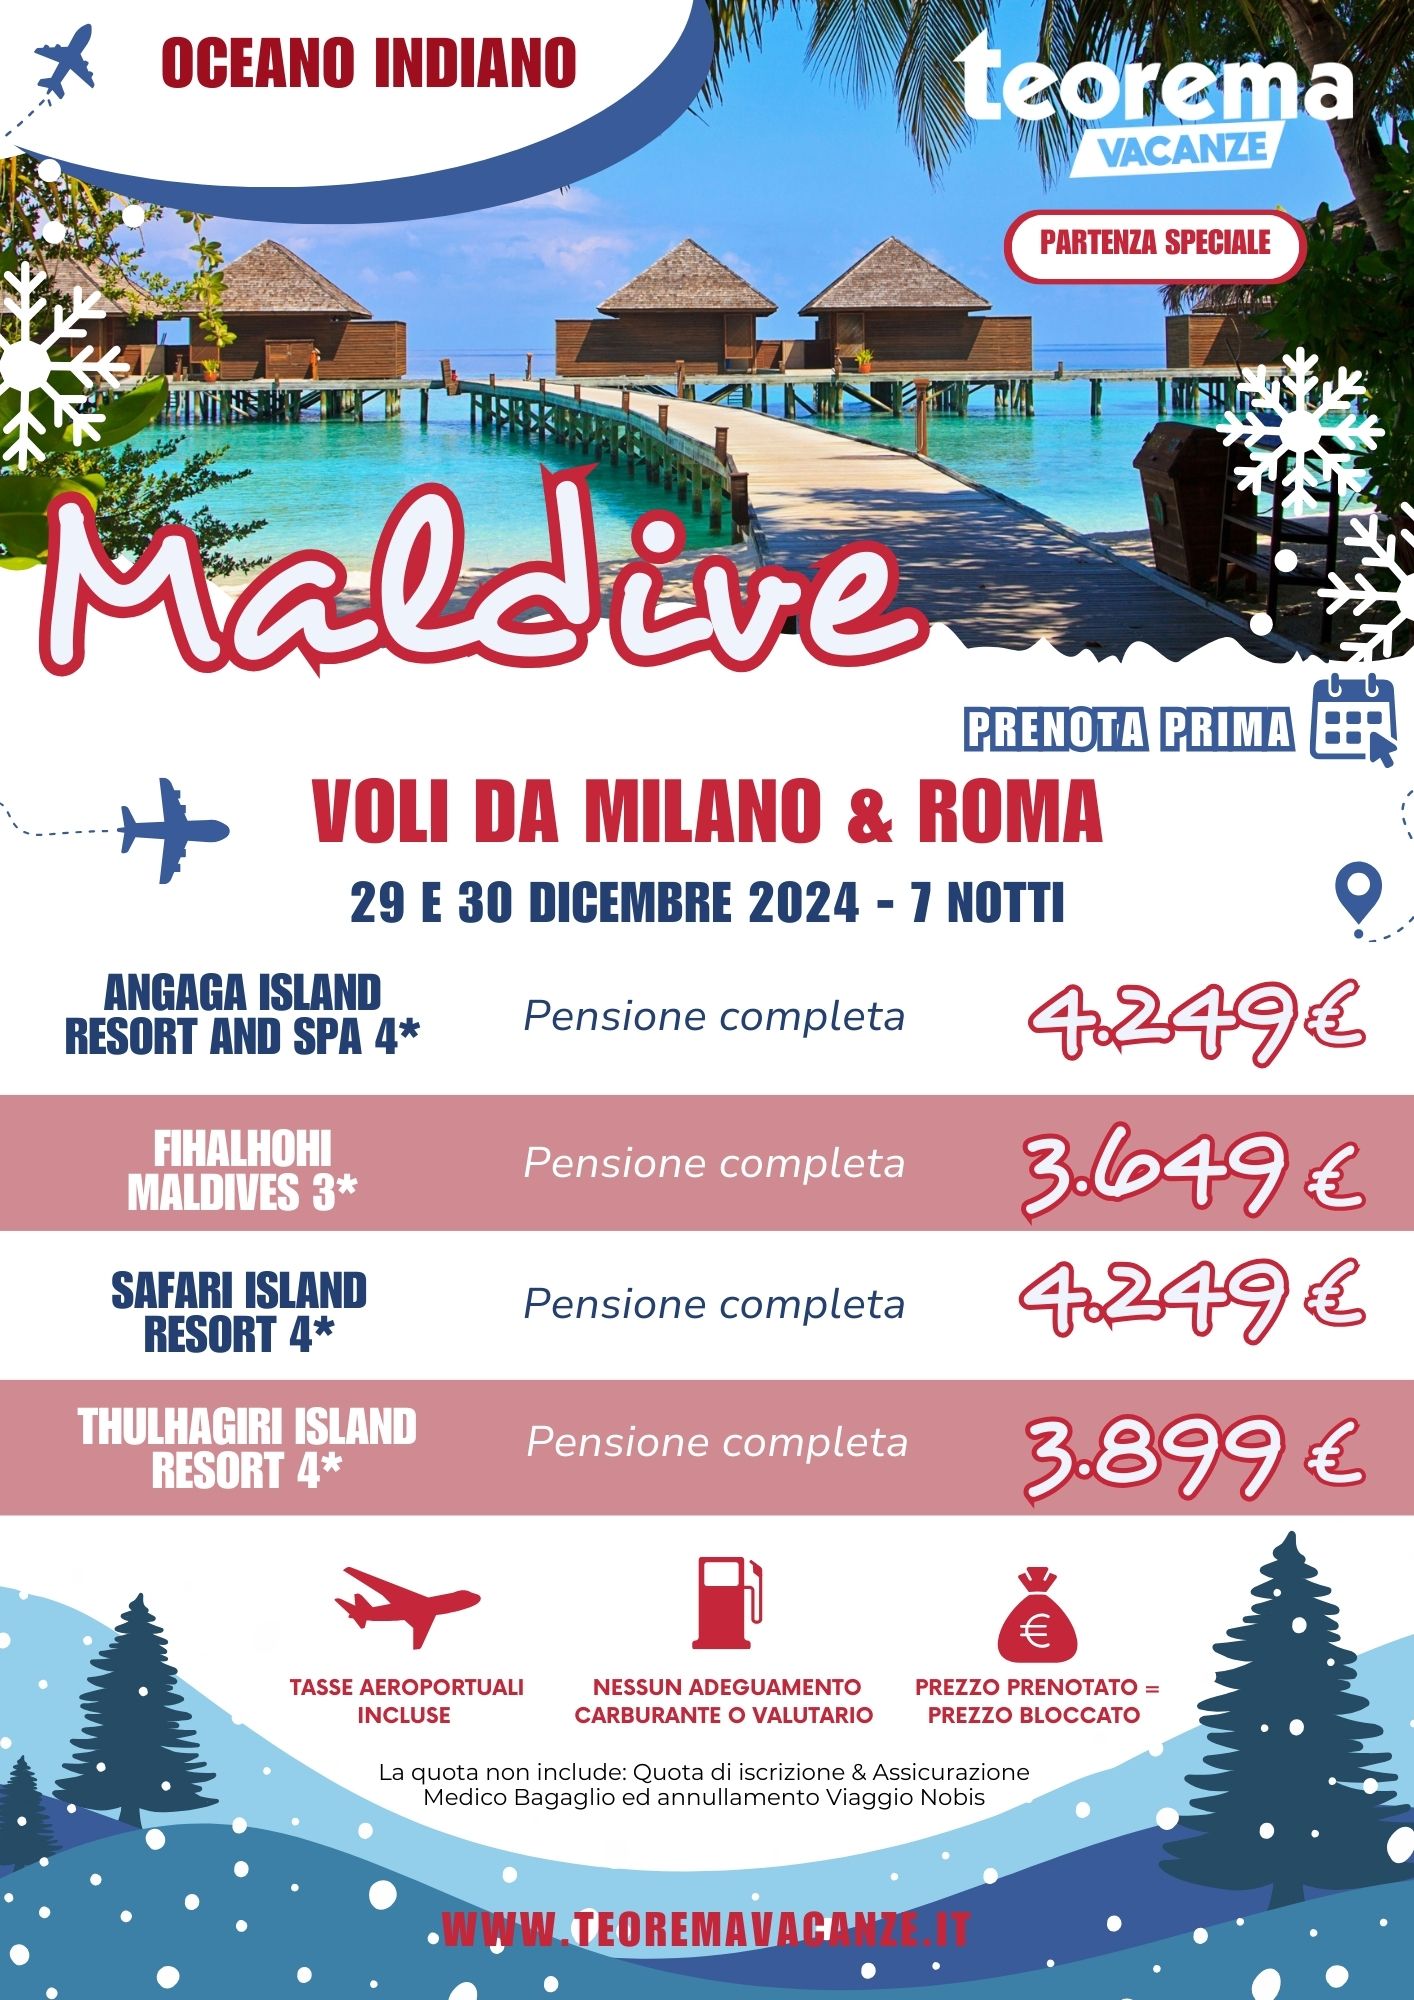 TEOREMA WINTER 2025 - MALDIVE DA MILANO & ROMA